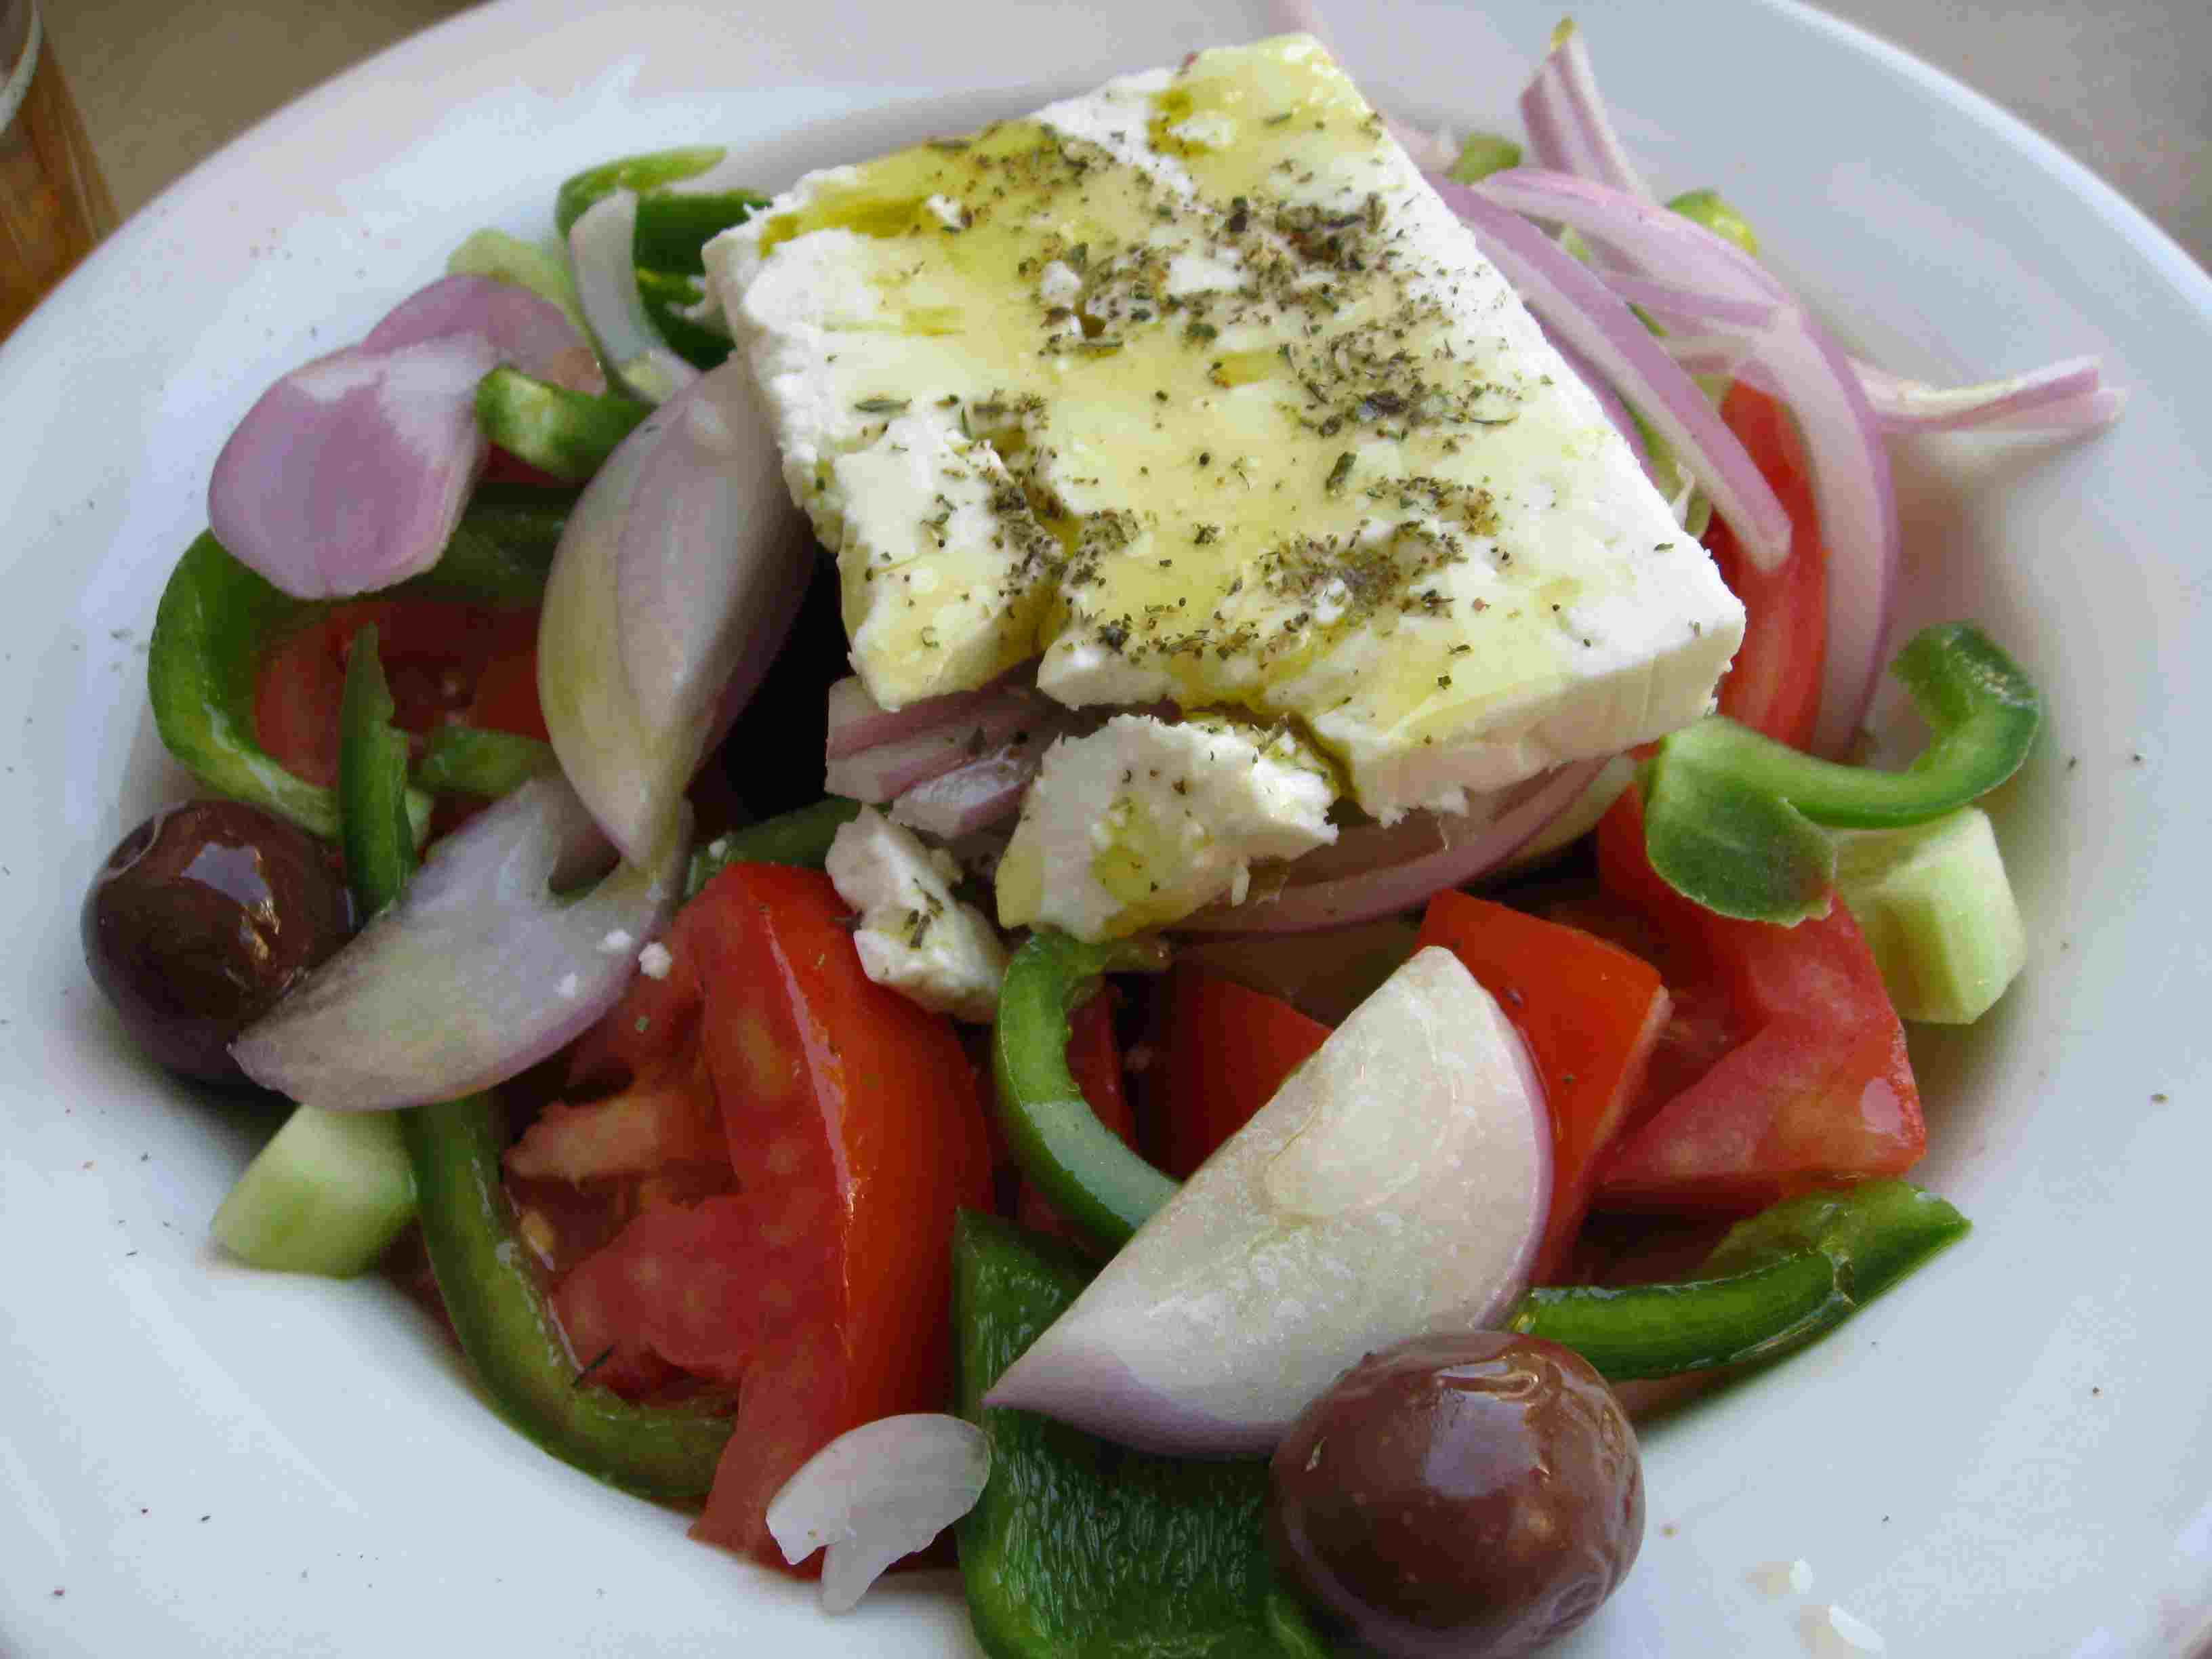 Μεσογειακή διατροφή: Παραδοσιακή και απαραίτητη!